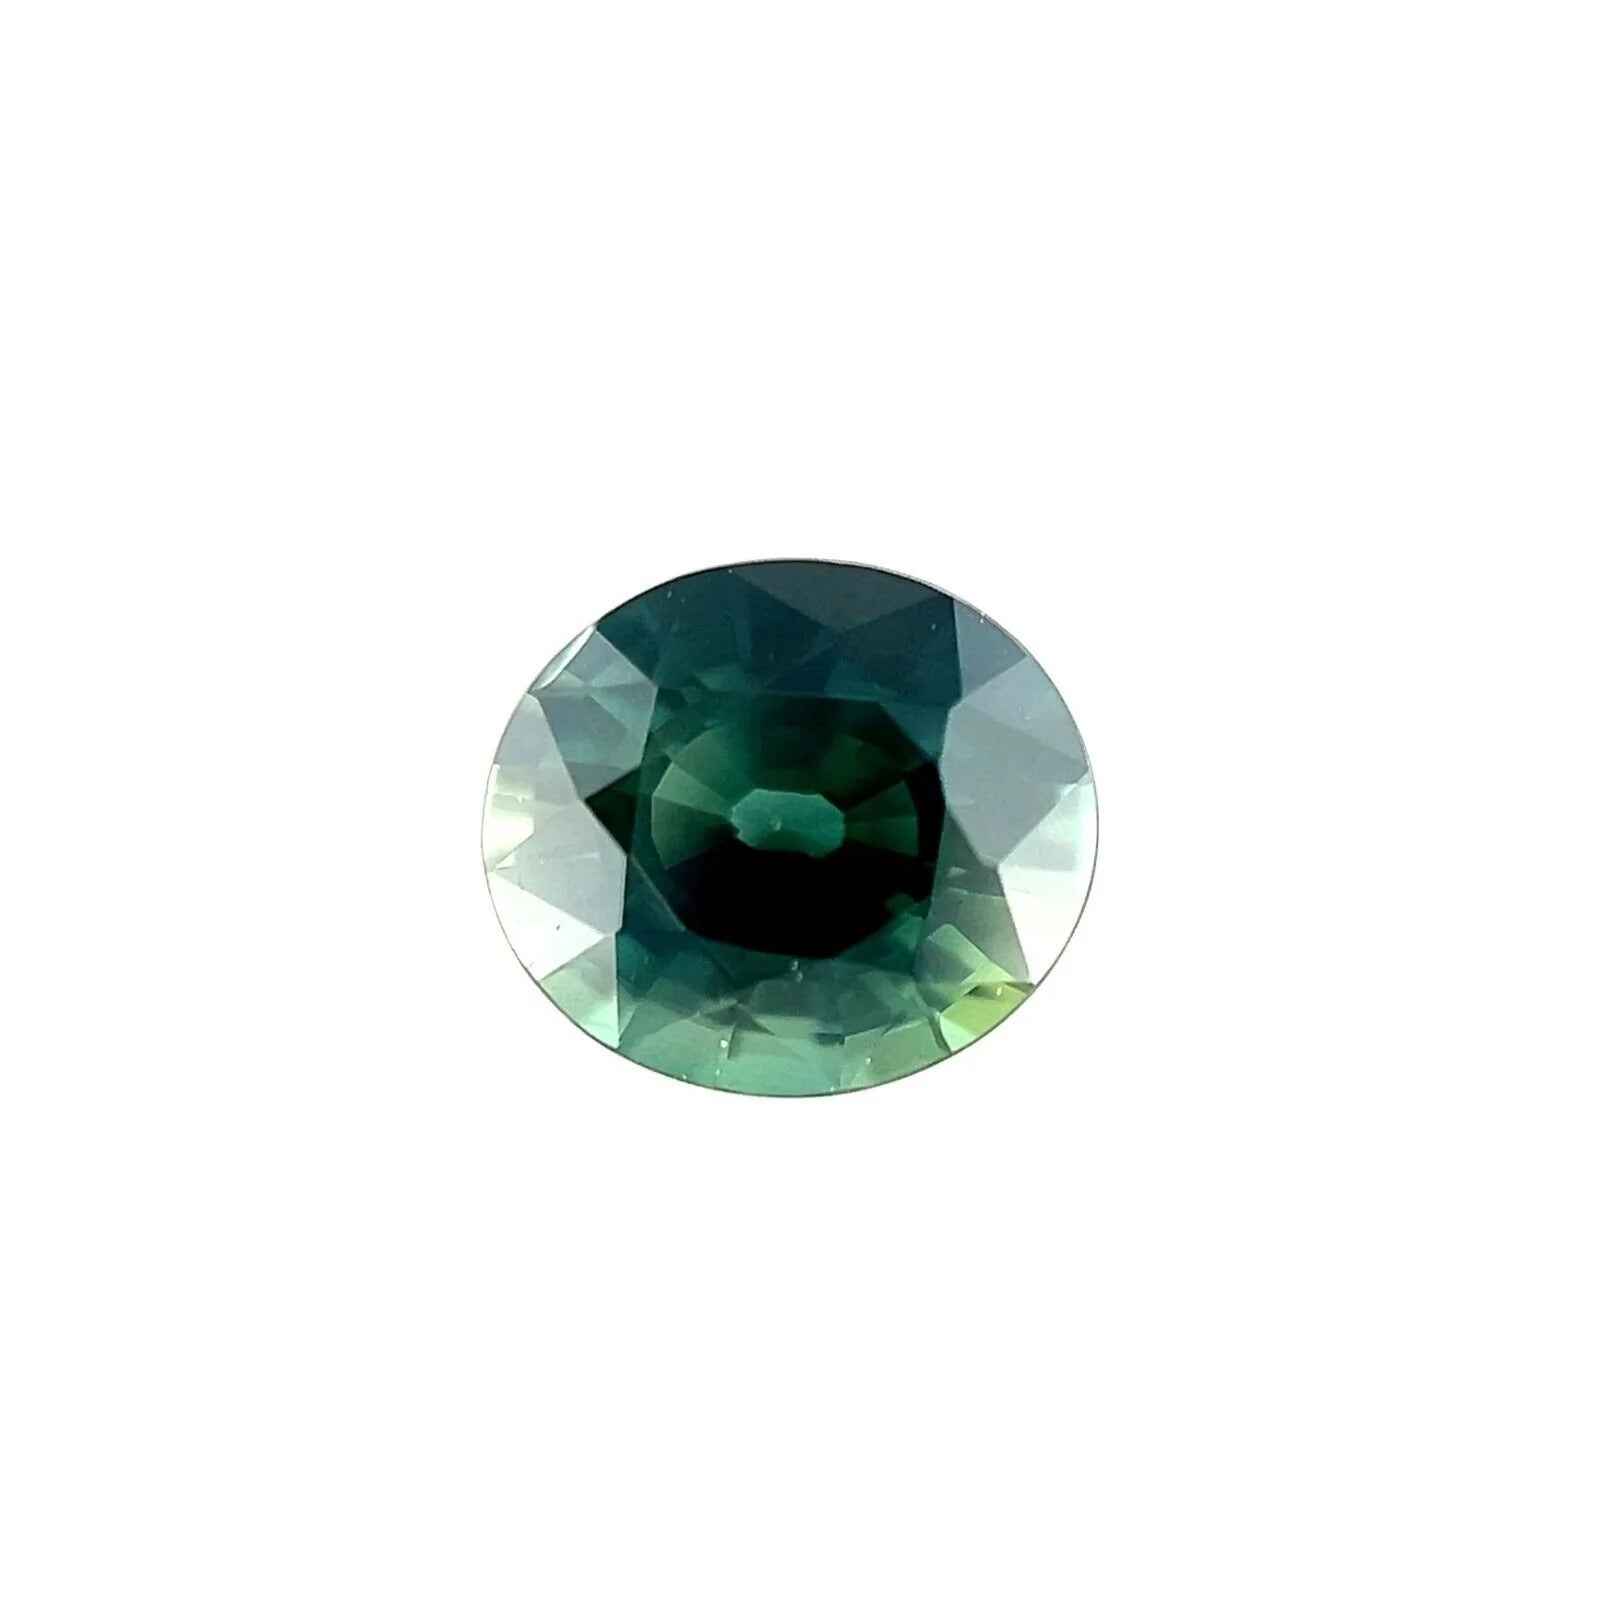 Loser Edelstein 6,4x5,6 mm, 1,06 Karat grüner, blauer natürlicher Saphir im Ovalschliff